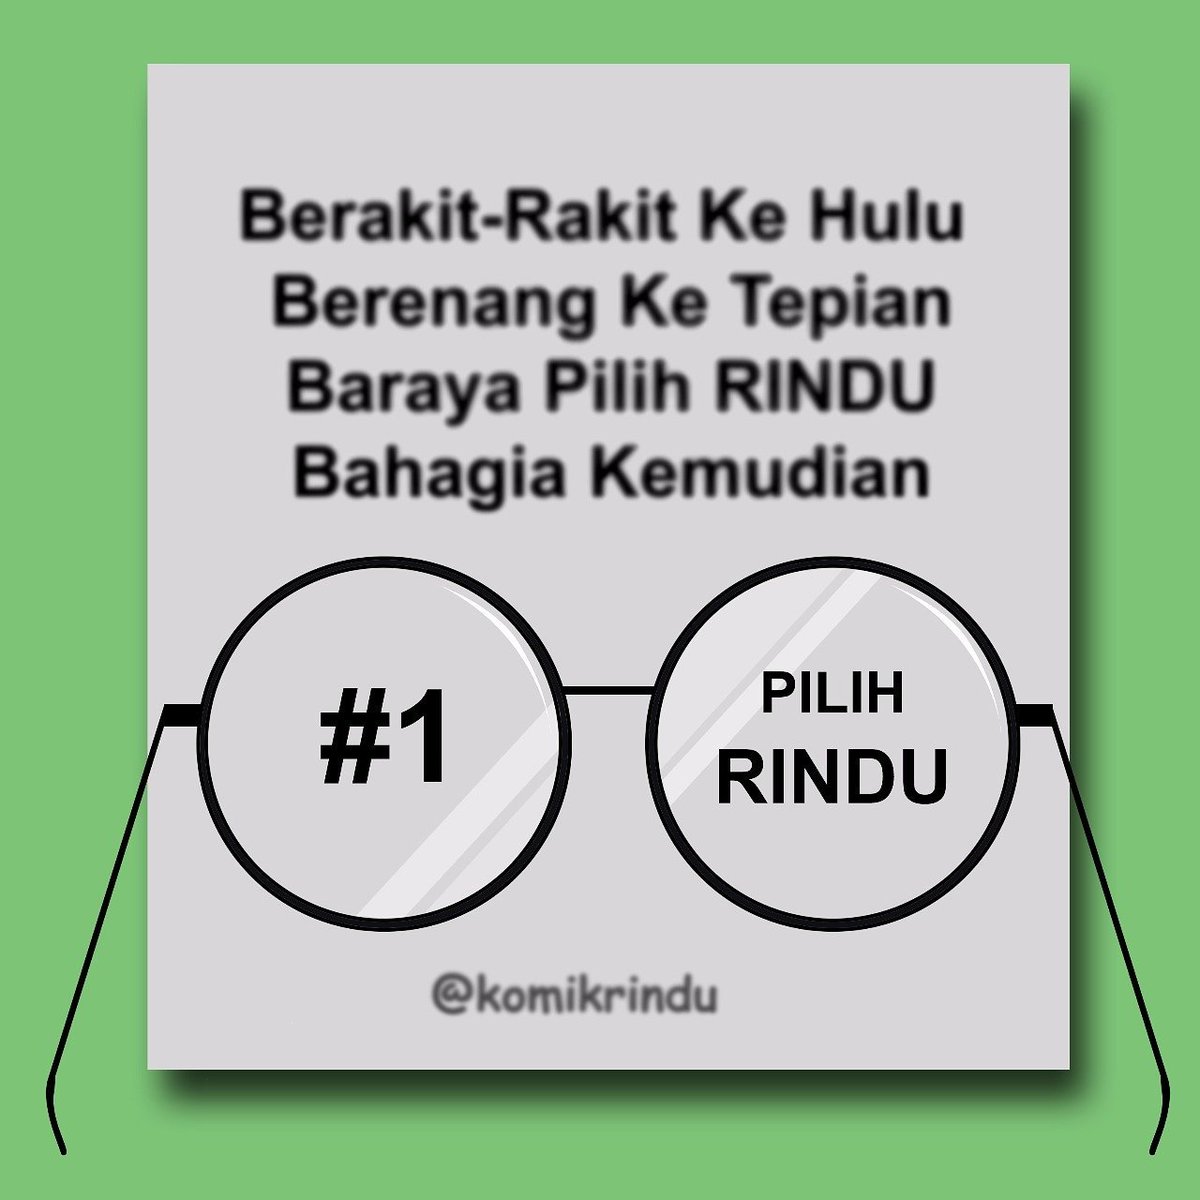 Komik RINDU On Twitter 1 Pilih RINDU Karena Bahagia Adalah Hak